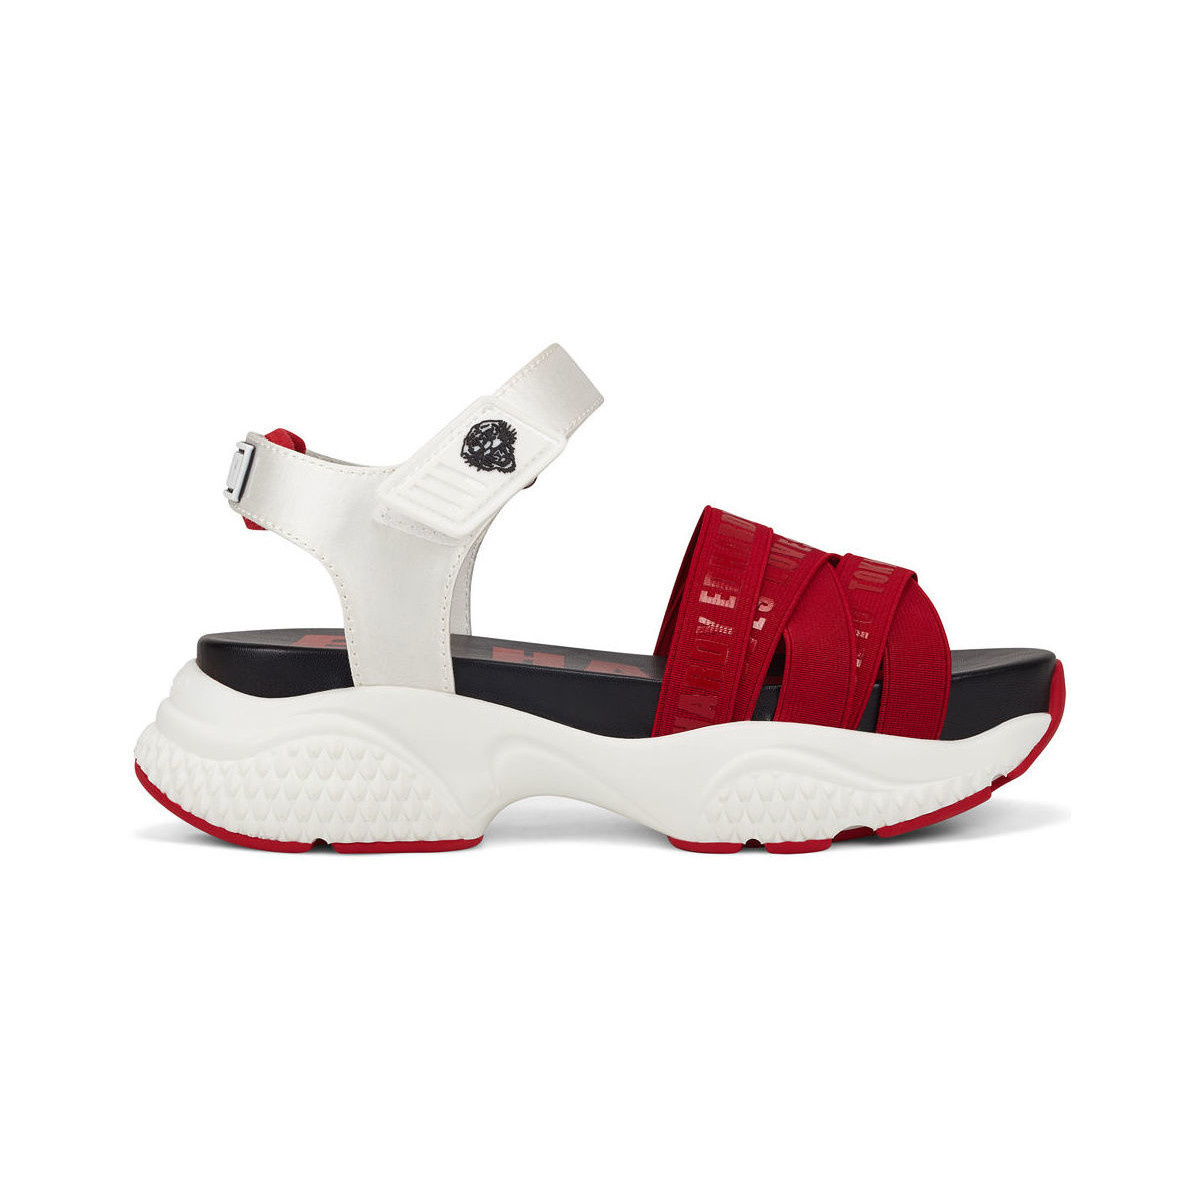 Sko Dame Sandaler Ed Hardy Overlap sandal red/white Rød